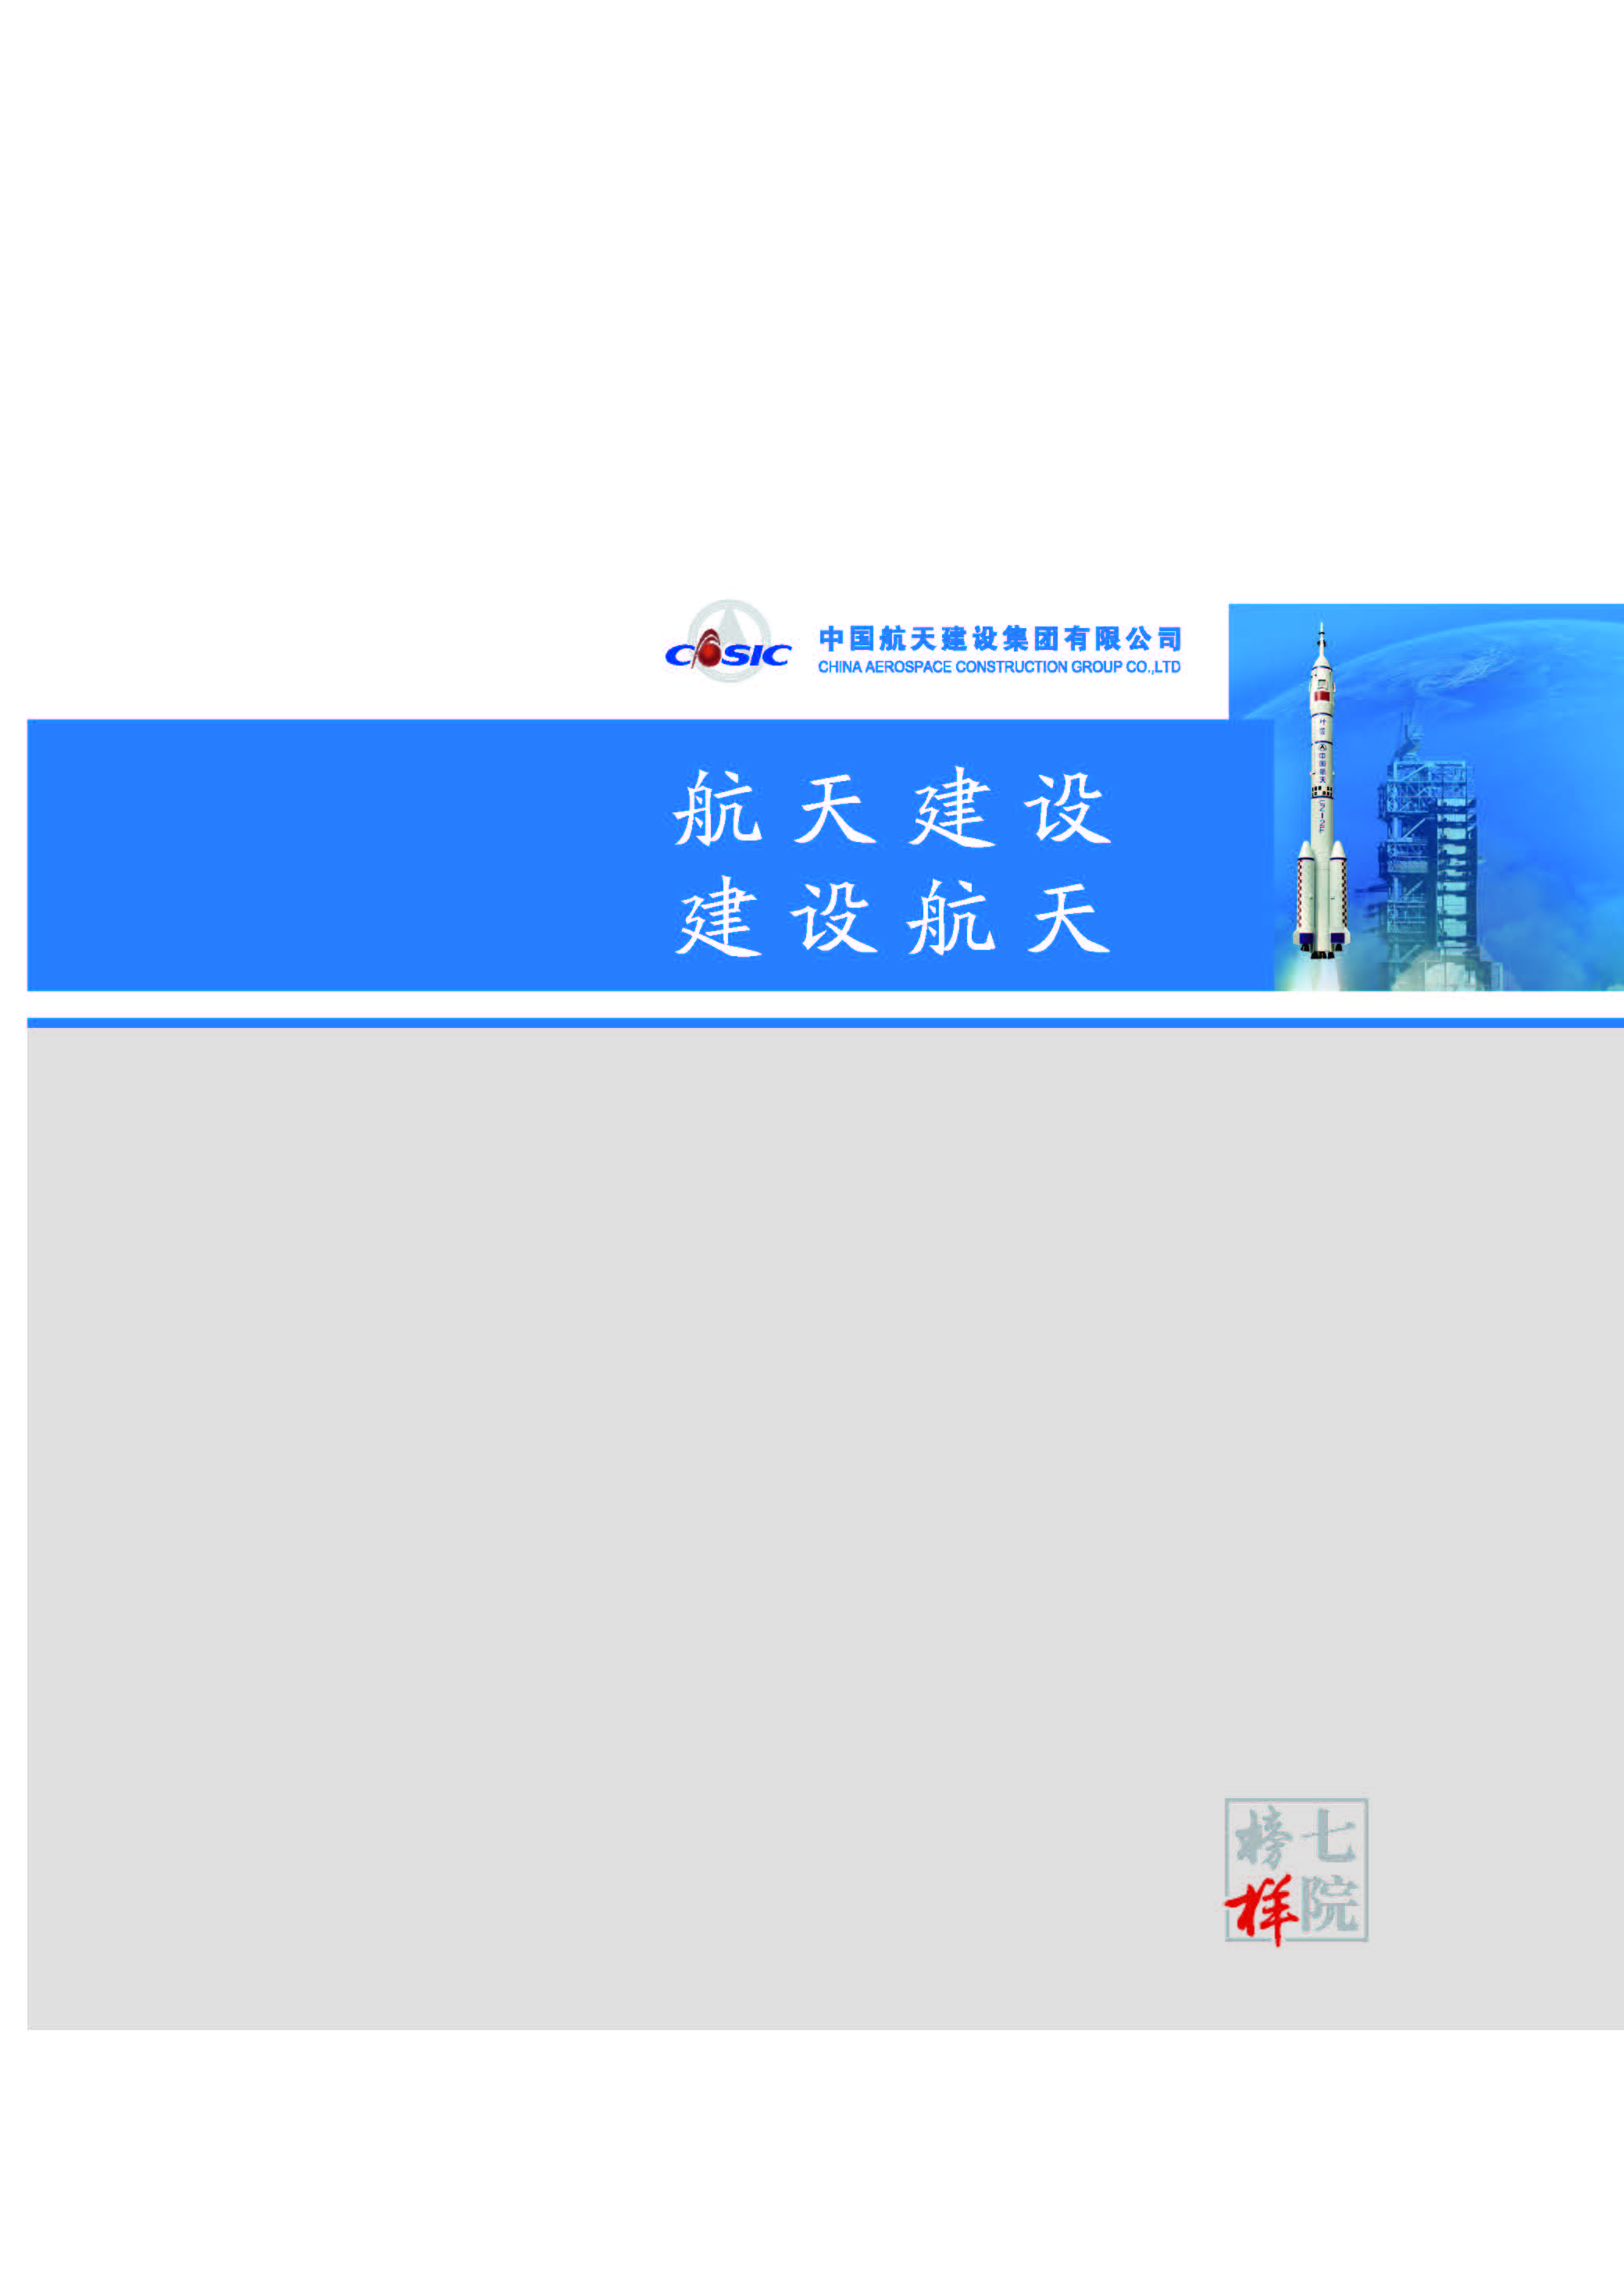 中国航天建设集团有限公司《七院榜样》